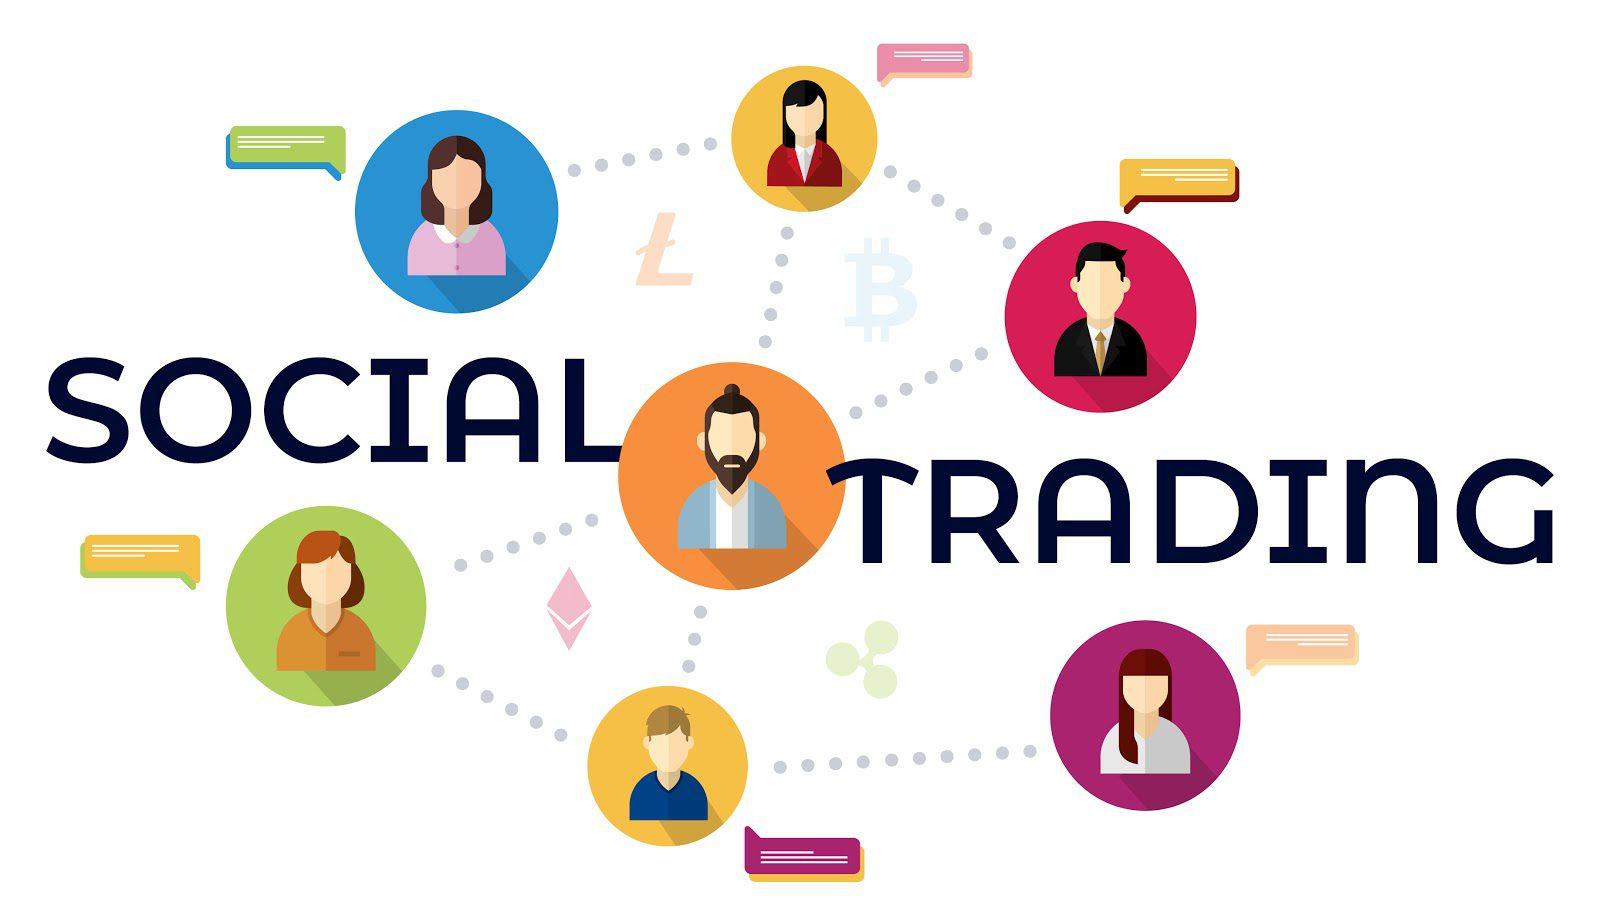 Social Trading'in temel amacı, yatırımcıların bilgi ve deneyimlerini paylaşmasını sağlayarak daha etkili yatırım kararları almasına yardımcı olmaktır. Bu platformlar, yatırımcıların diğerlerinin işlemlerini inceleyebilmesini, başarılı yatırımcıları takip edebilmesini ve hatta kendi yatırım stratejilerini bu başarılı yatırımcıların stratejilerine göre oluşturabilmesini sağlar.